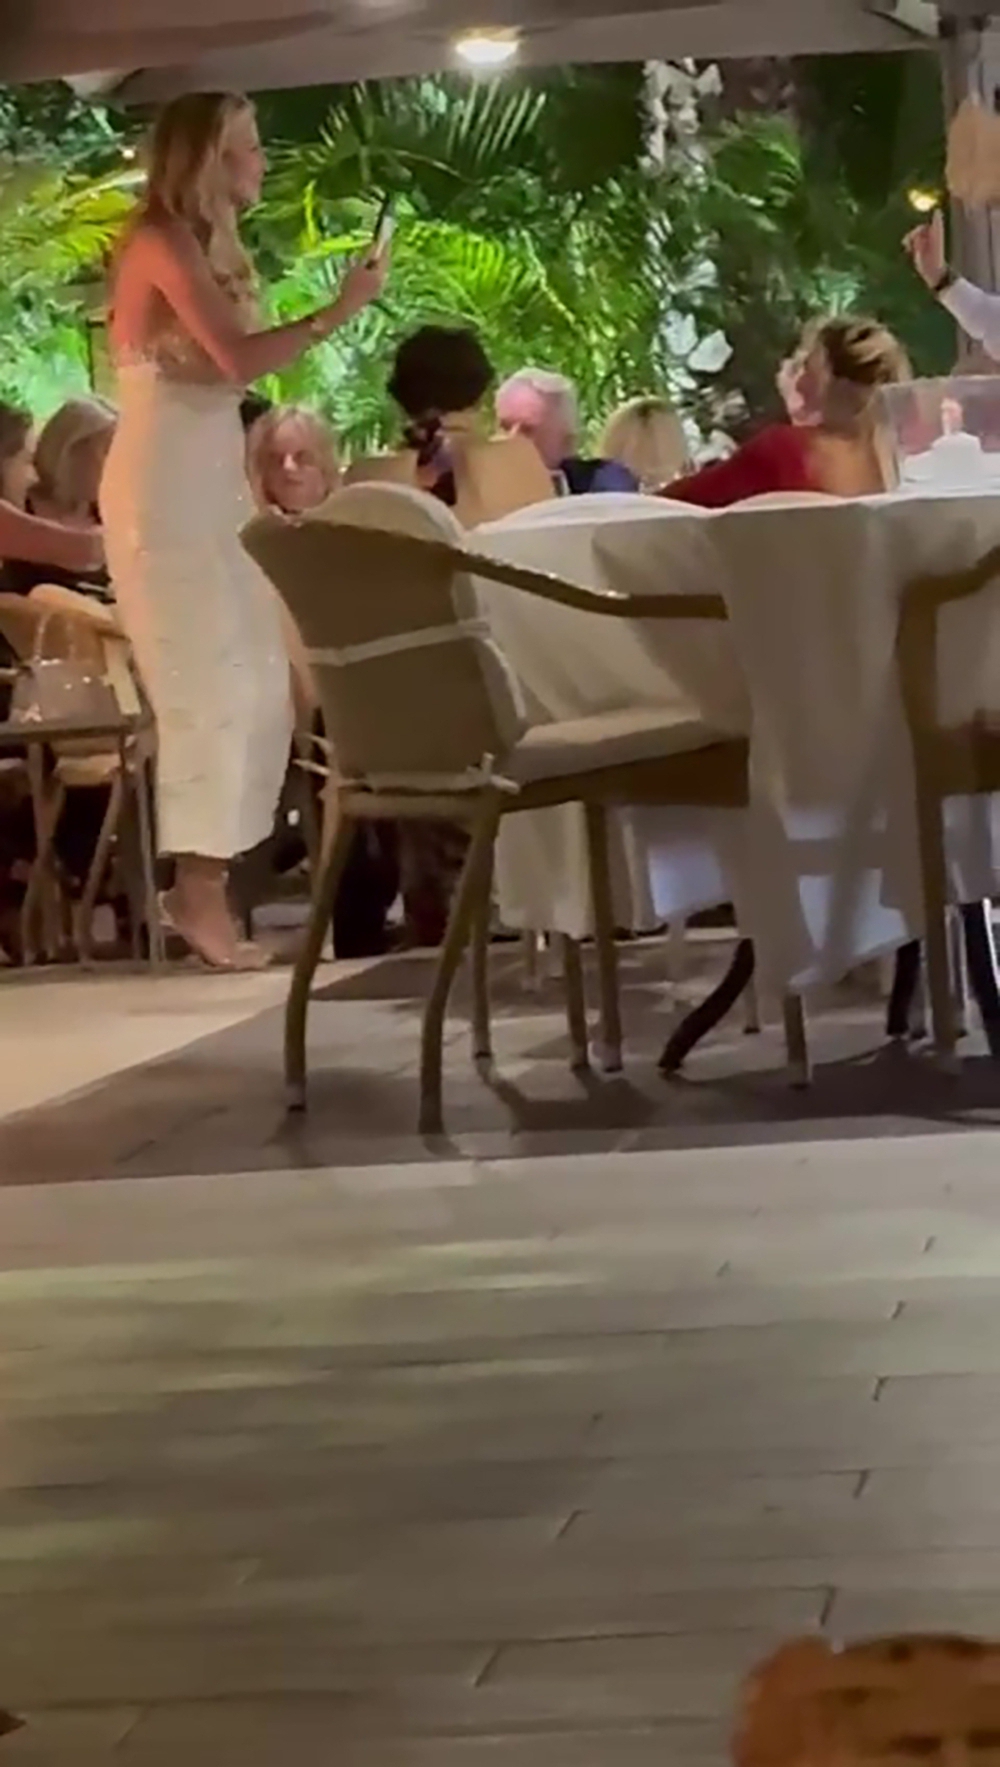 Le magnat du soutien-gorge, 52 ans, a été aperçu avec des amis dans un restaurant chic